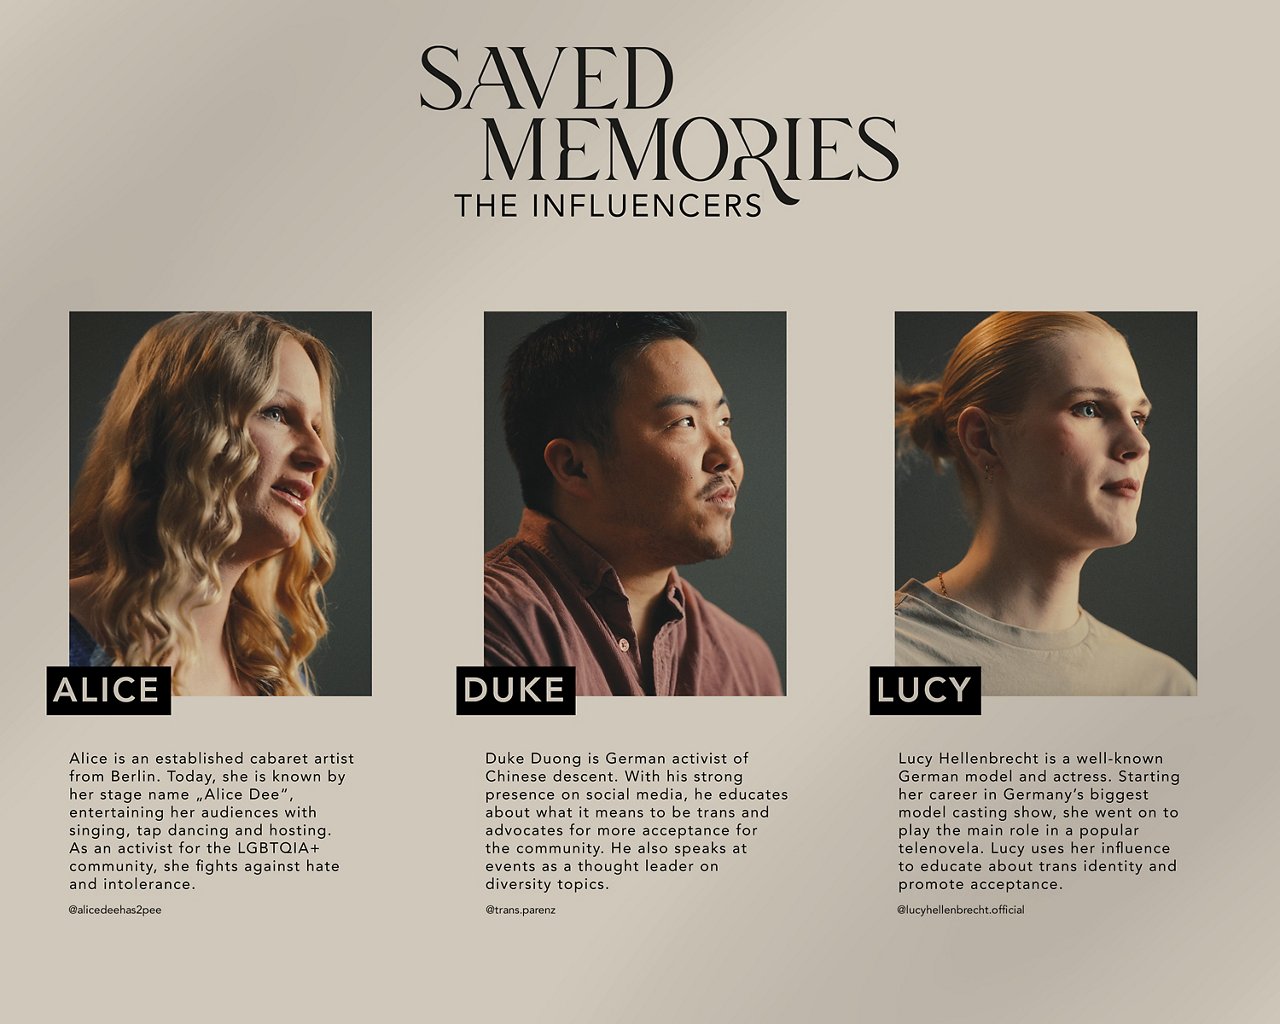 Transklar e.V. - Saved Memories